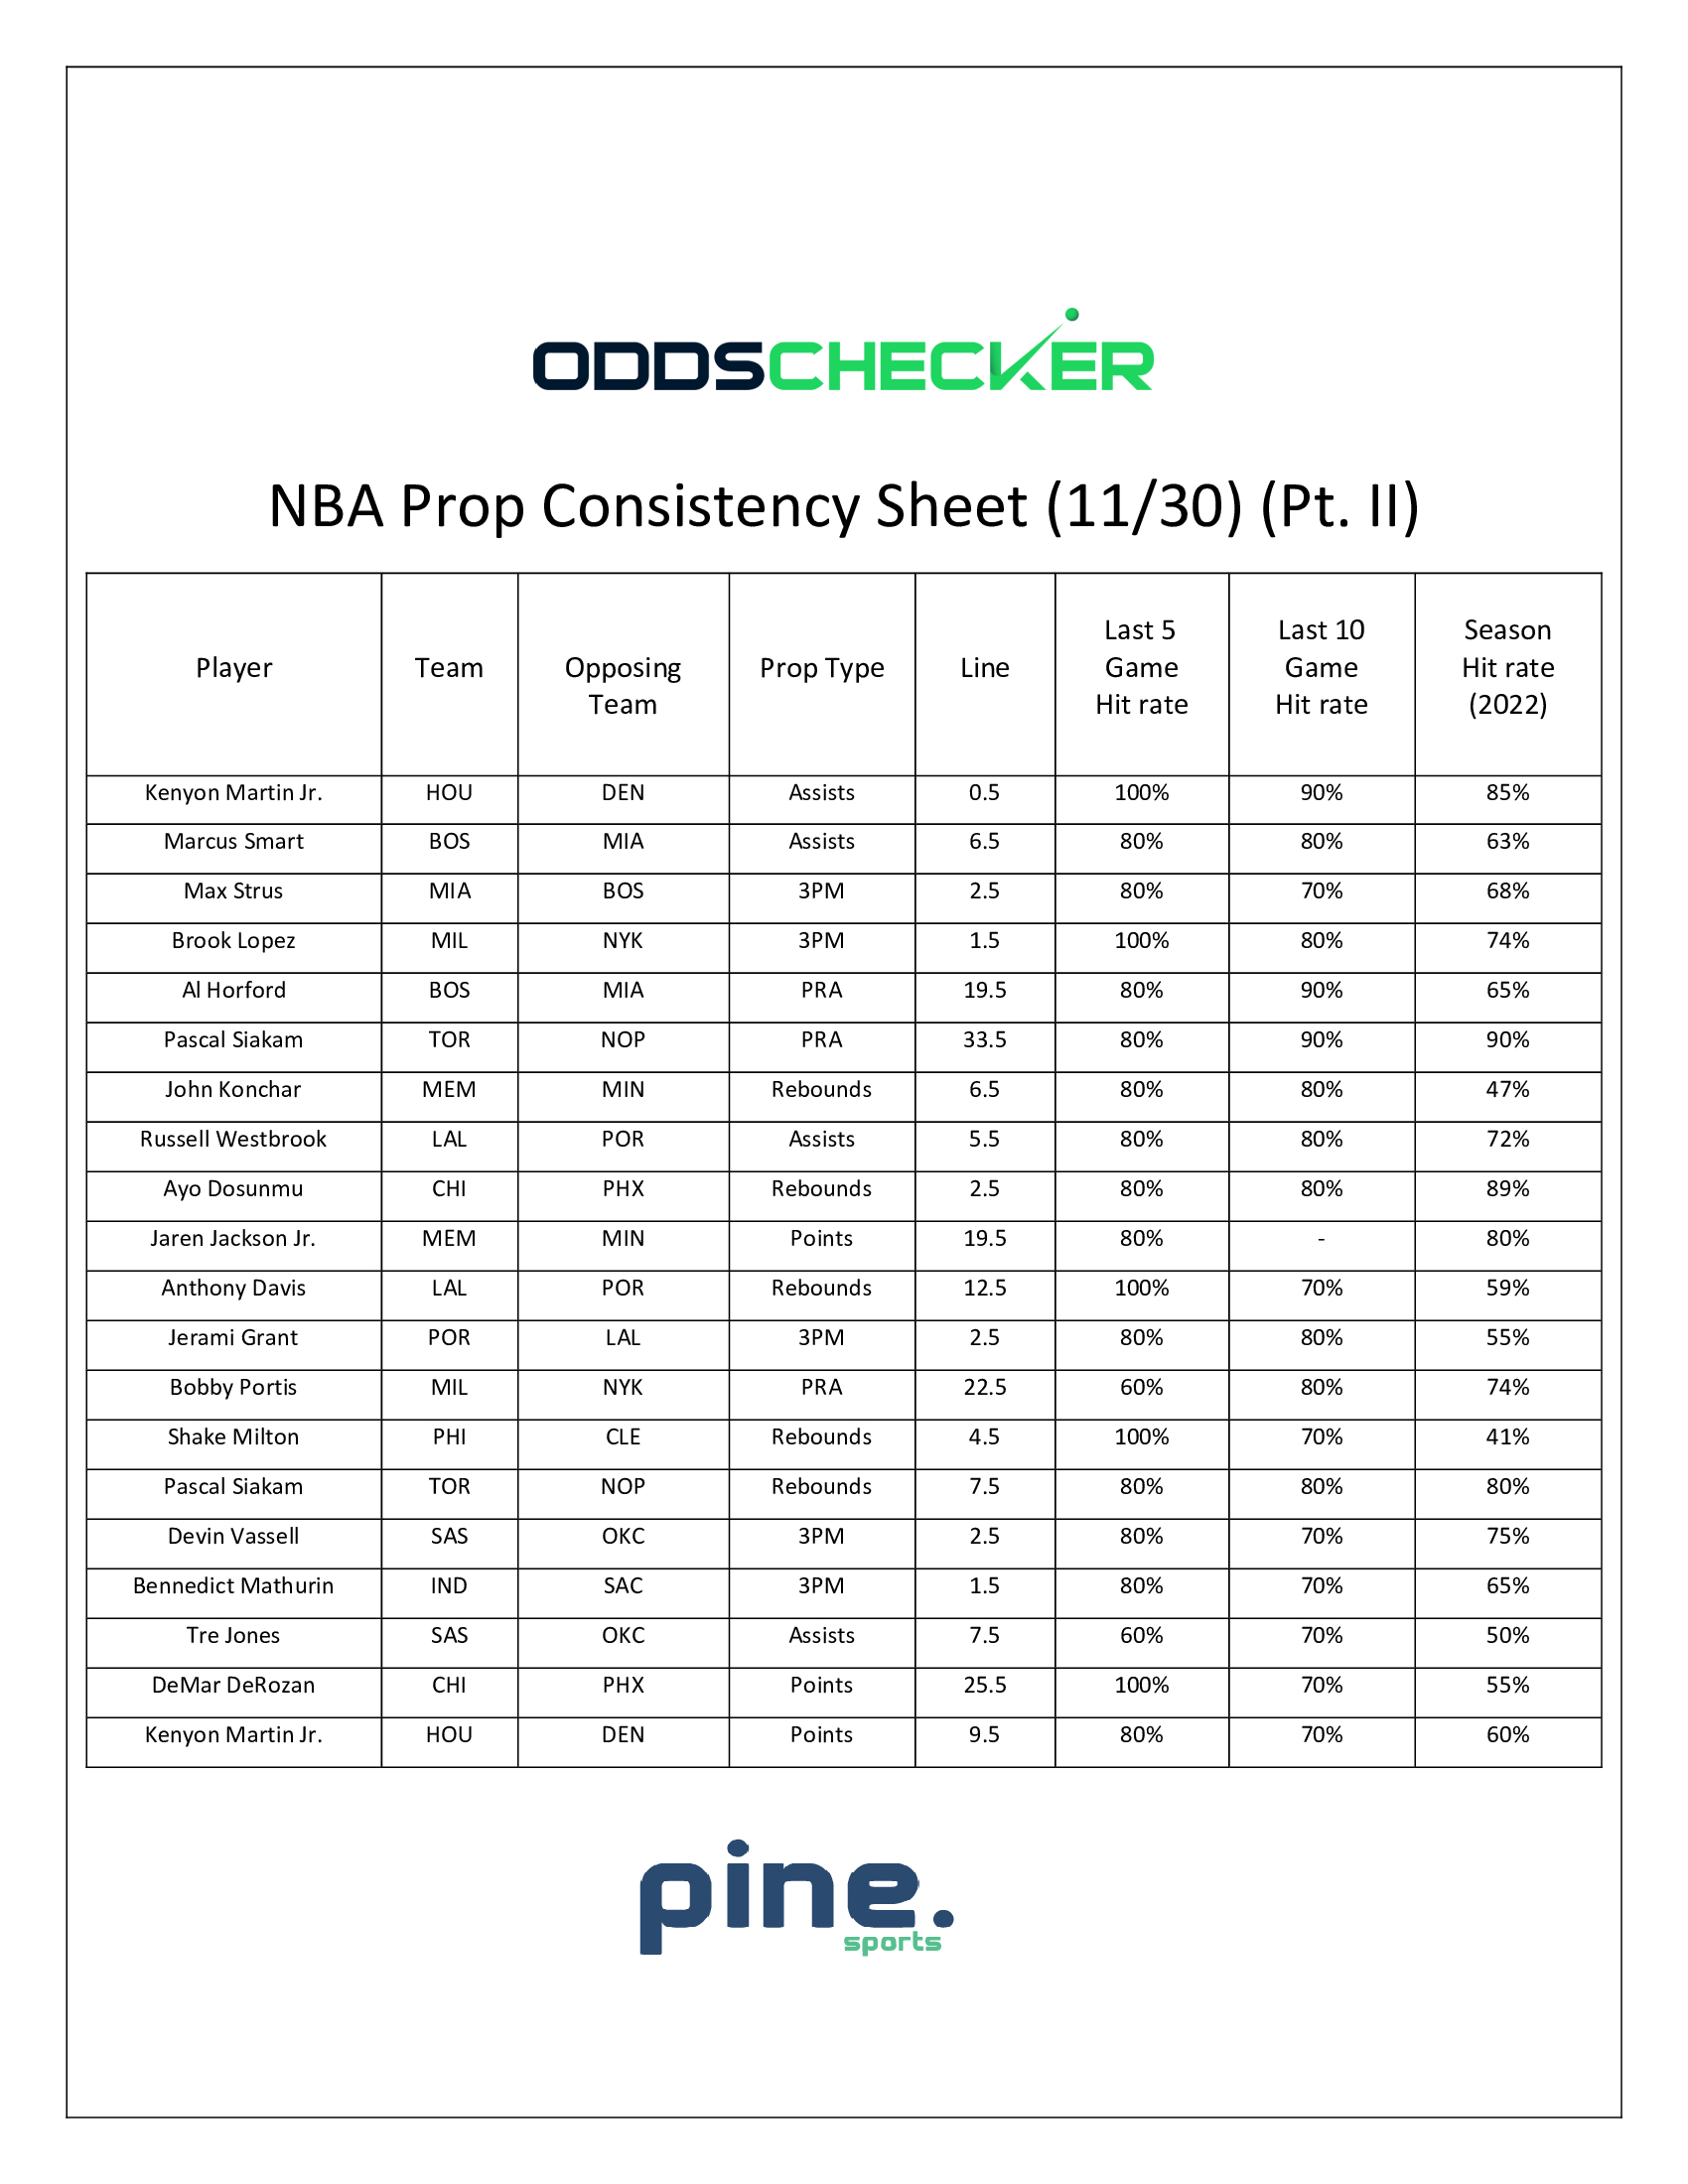 NBA-Prop-Consistency-Sheet-11.30.-Pt-II